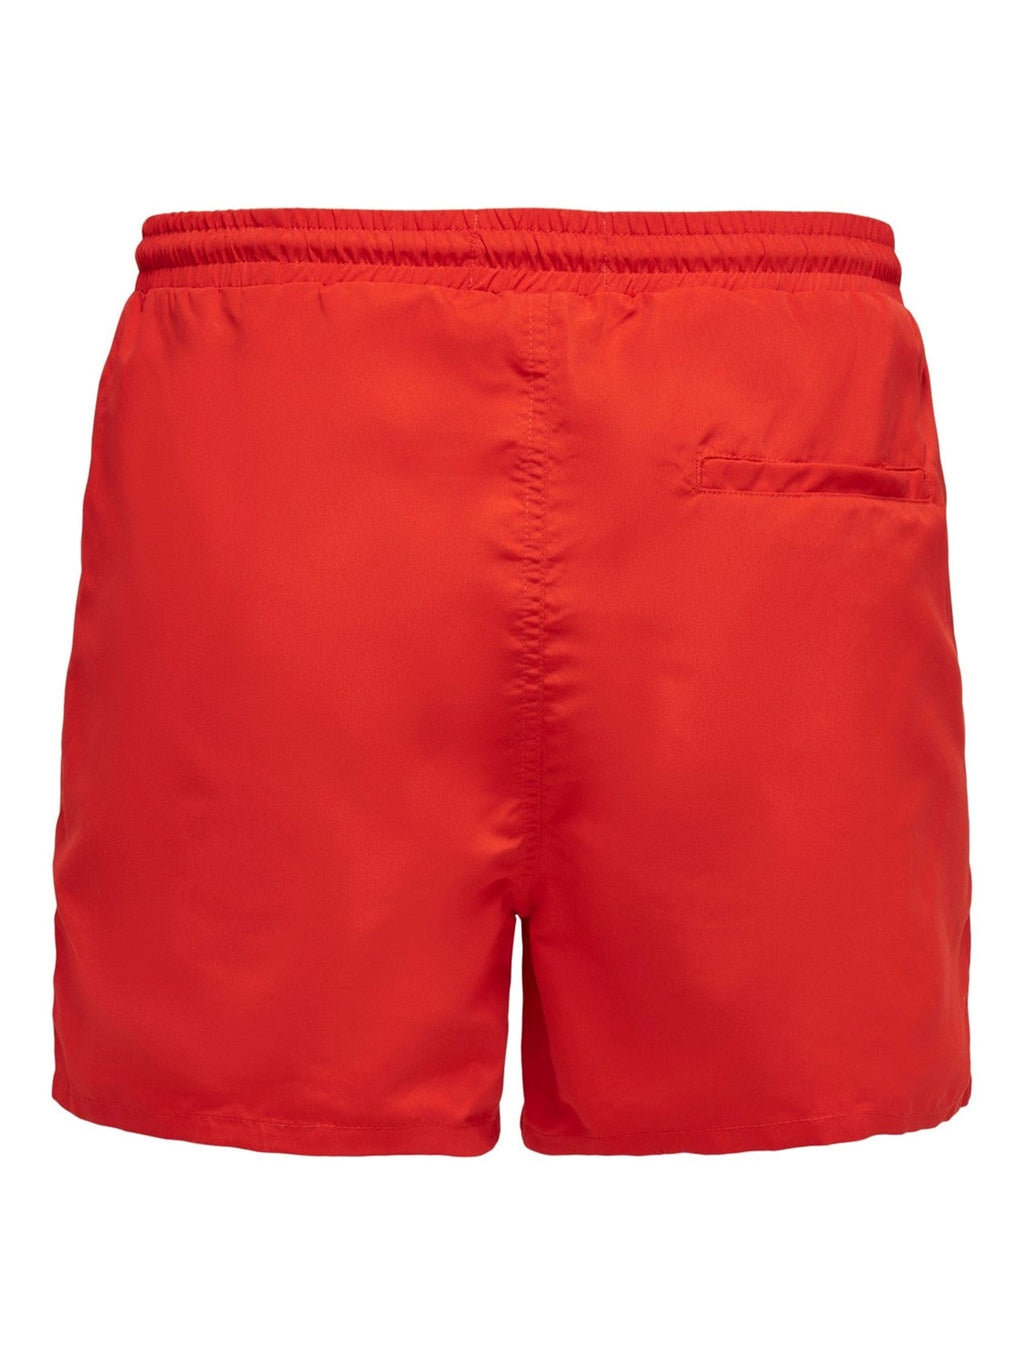 Plaukti shorts su virvele - Raudona